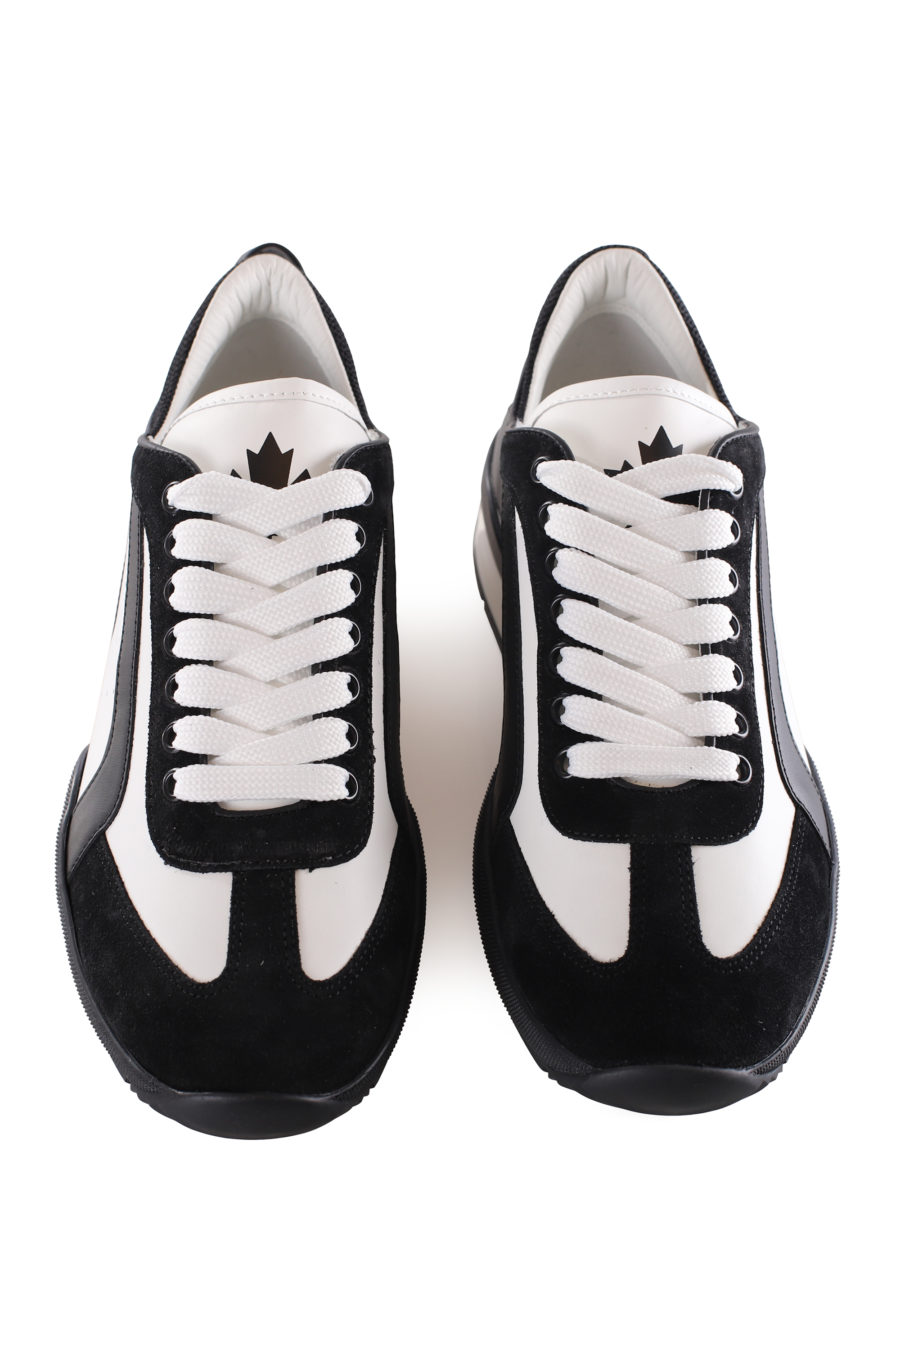 Zapatillas blancas con detalles negros y logo pequeño - IMG 9540